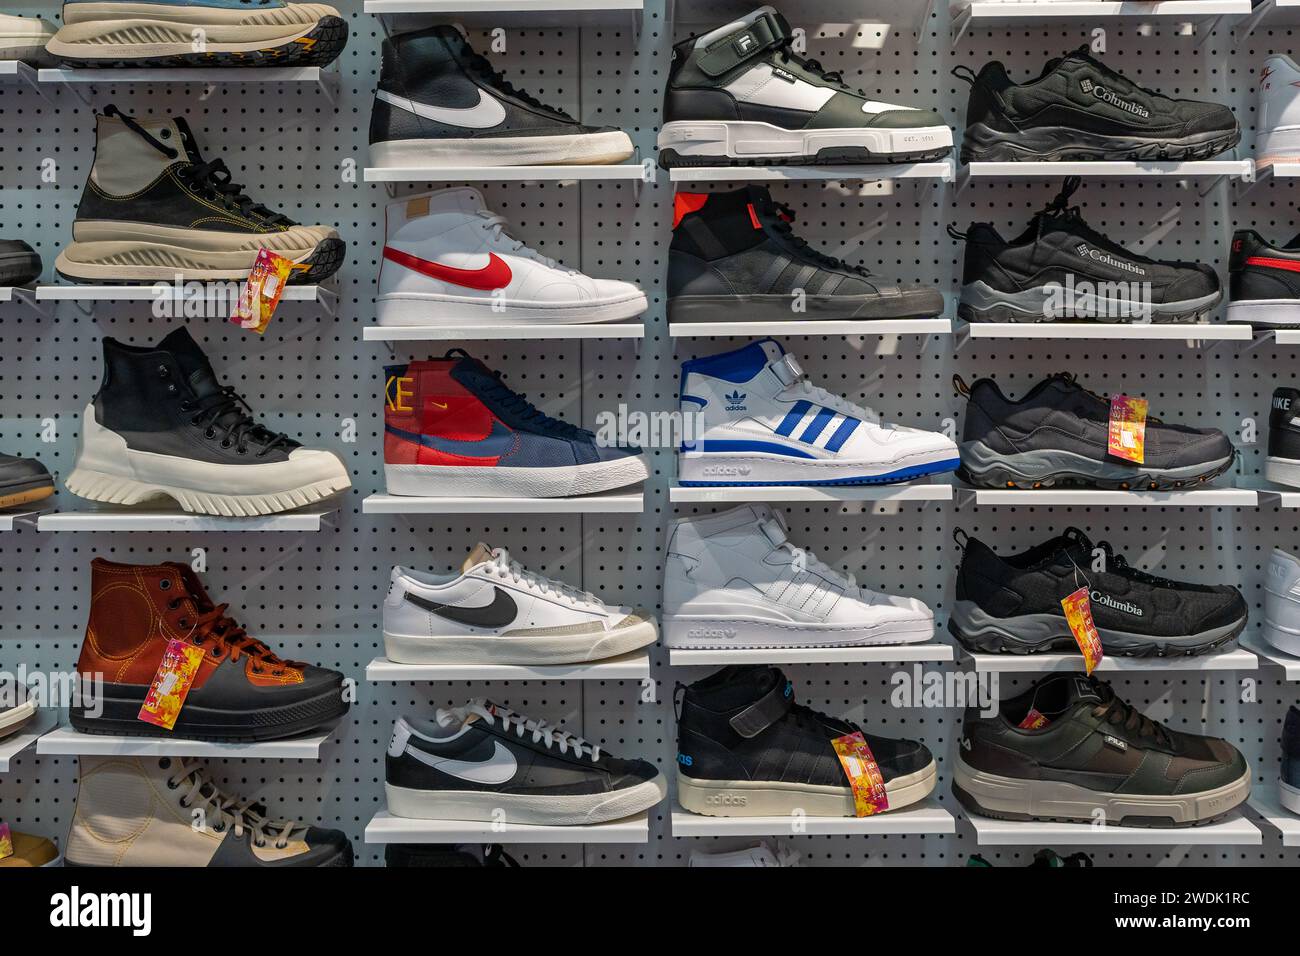 Boutique affichage d'un grand nombre de chaussures de sport sur un mur. Mur de chaussures à l'intérieur du magasin. Nouvelles baskets modernes et élégantes de différentes marques. Minsk, Biélorussie, 2024 Banque D'Images